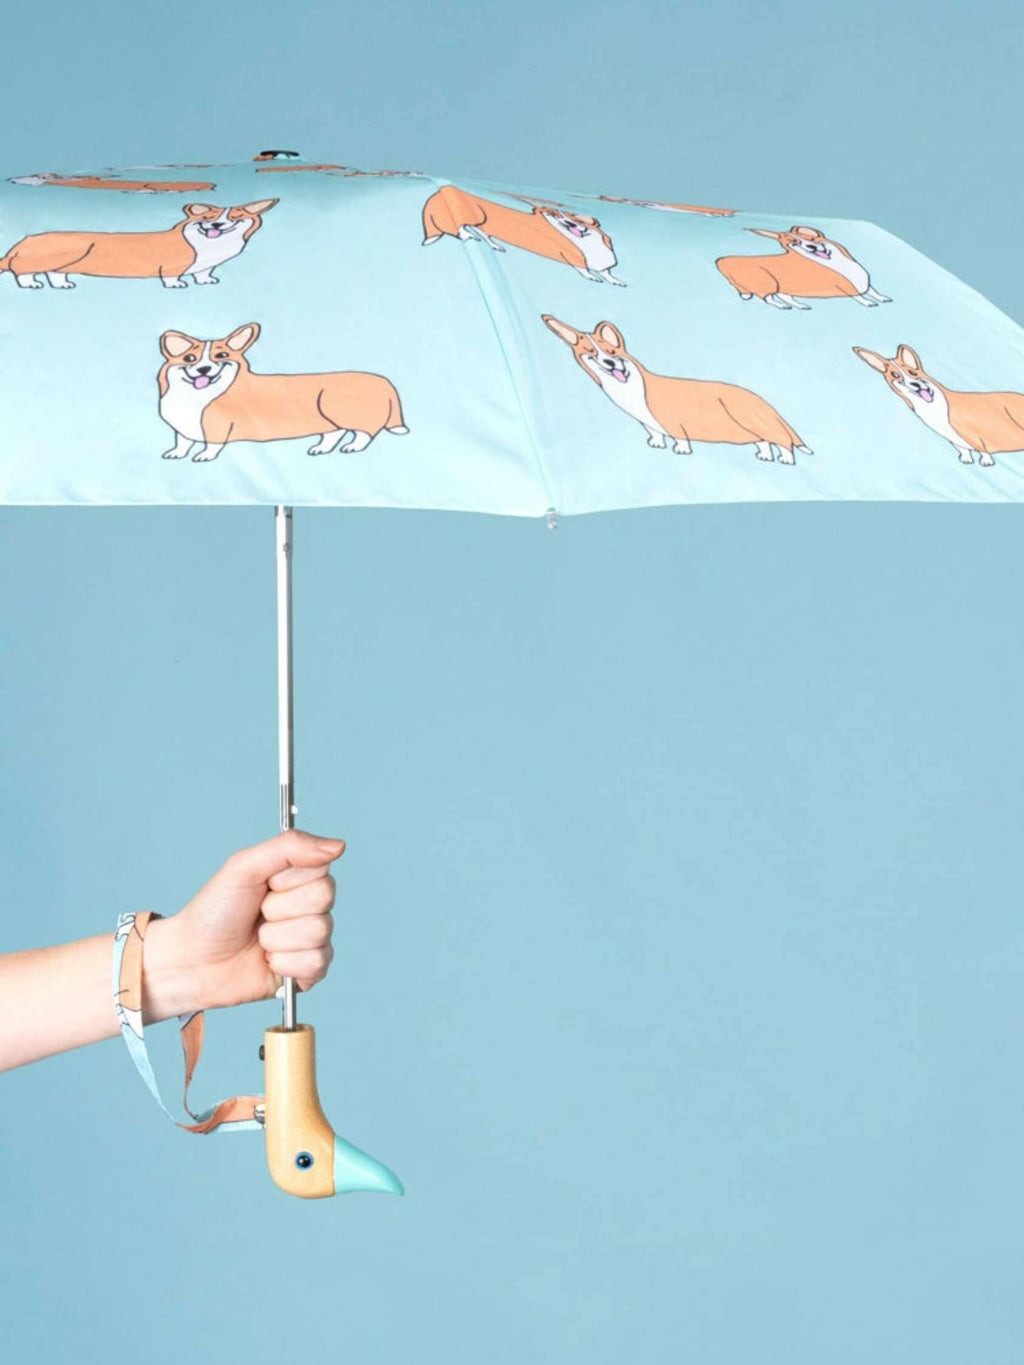 Corgi Mint Duck Compact Umbrella